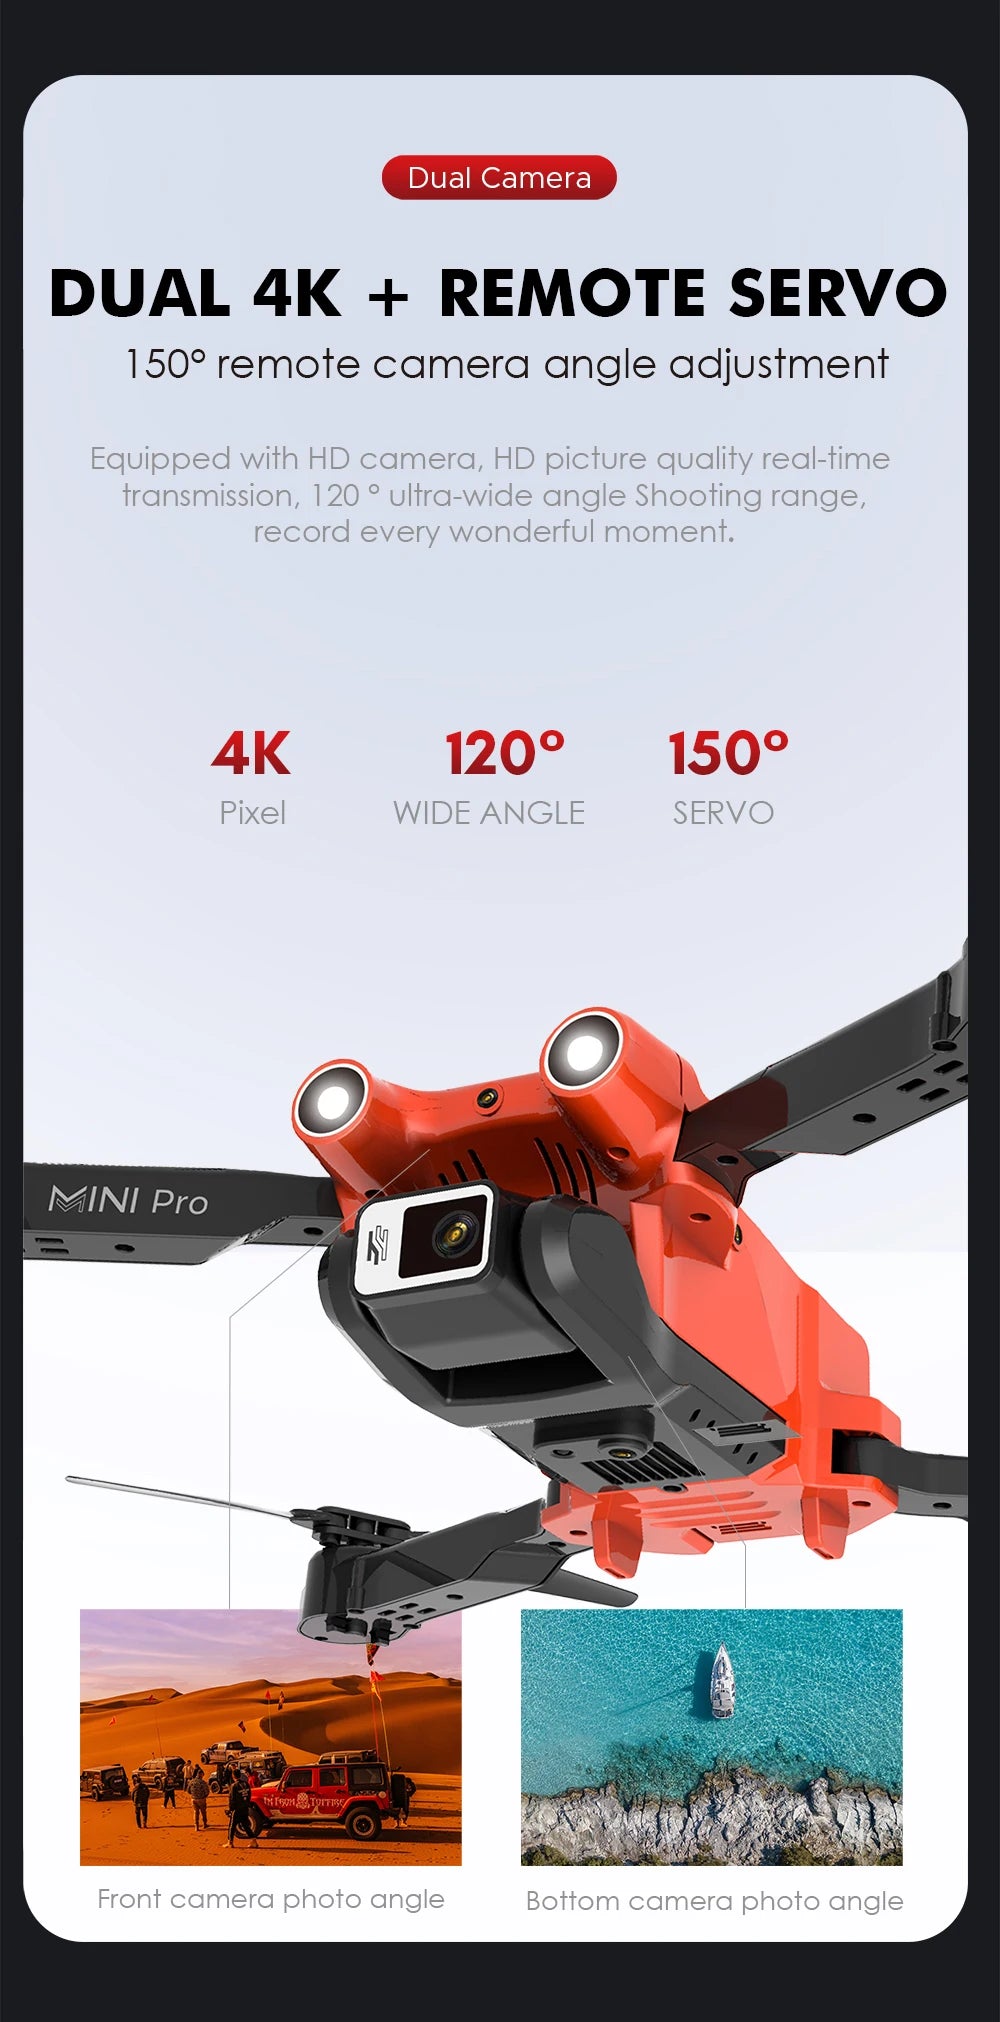 E63 Drone, servo mini pro kifopn# 